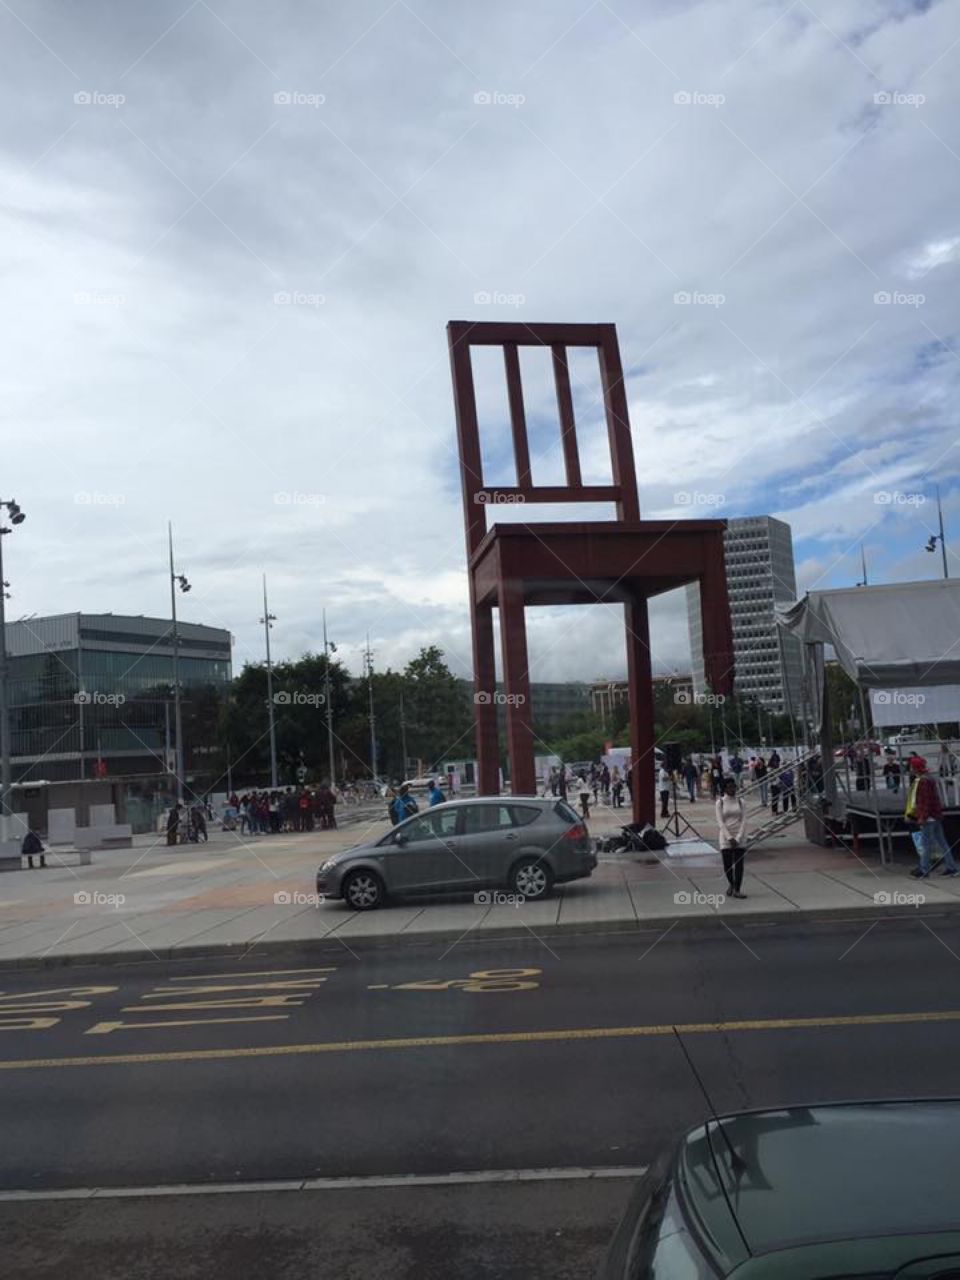 A public ART in Geneva-Switzerland “Broken Chair” by Daniel Berset 